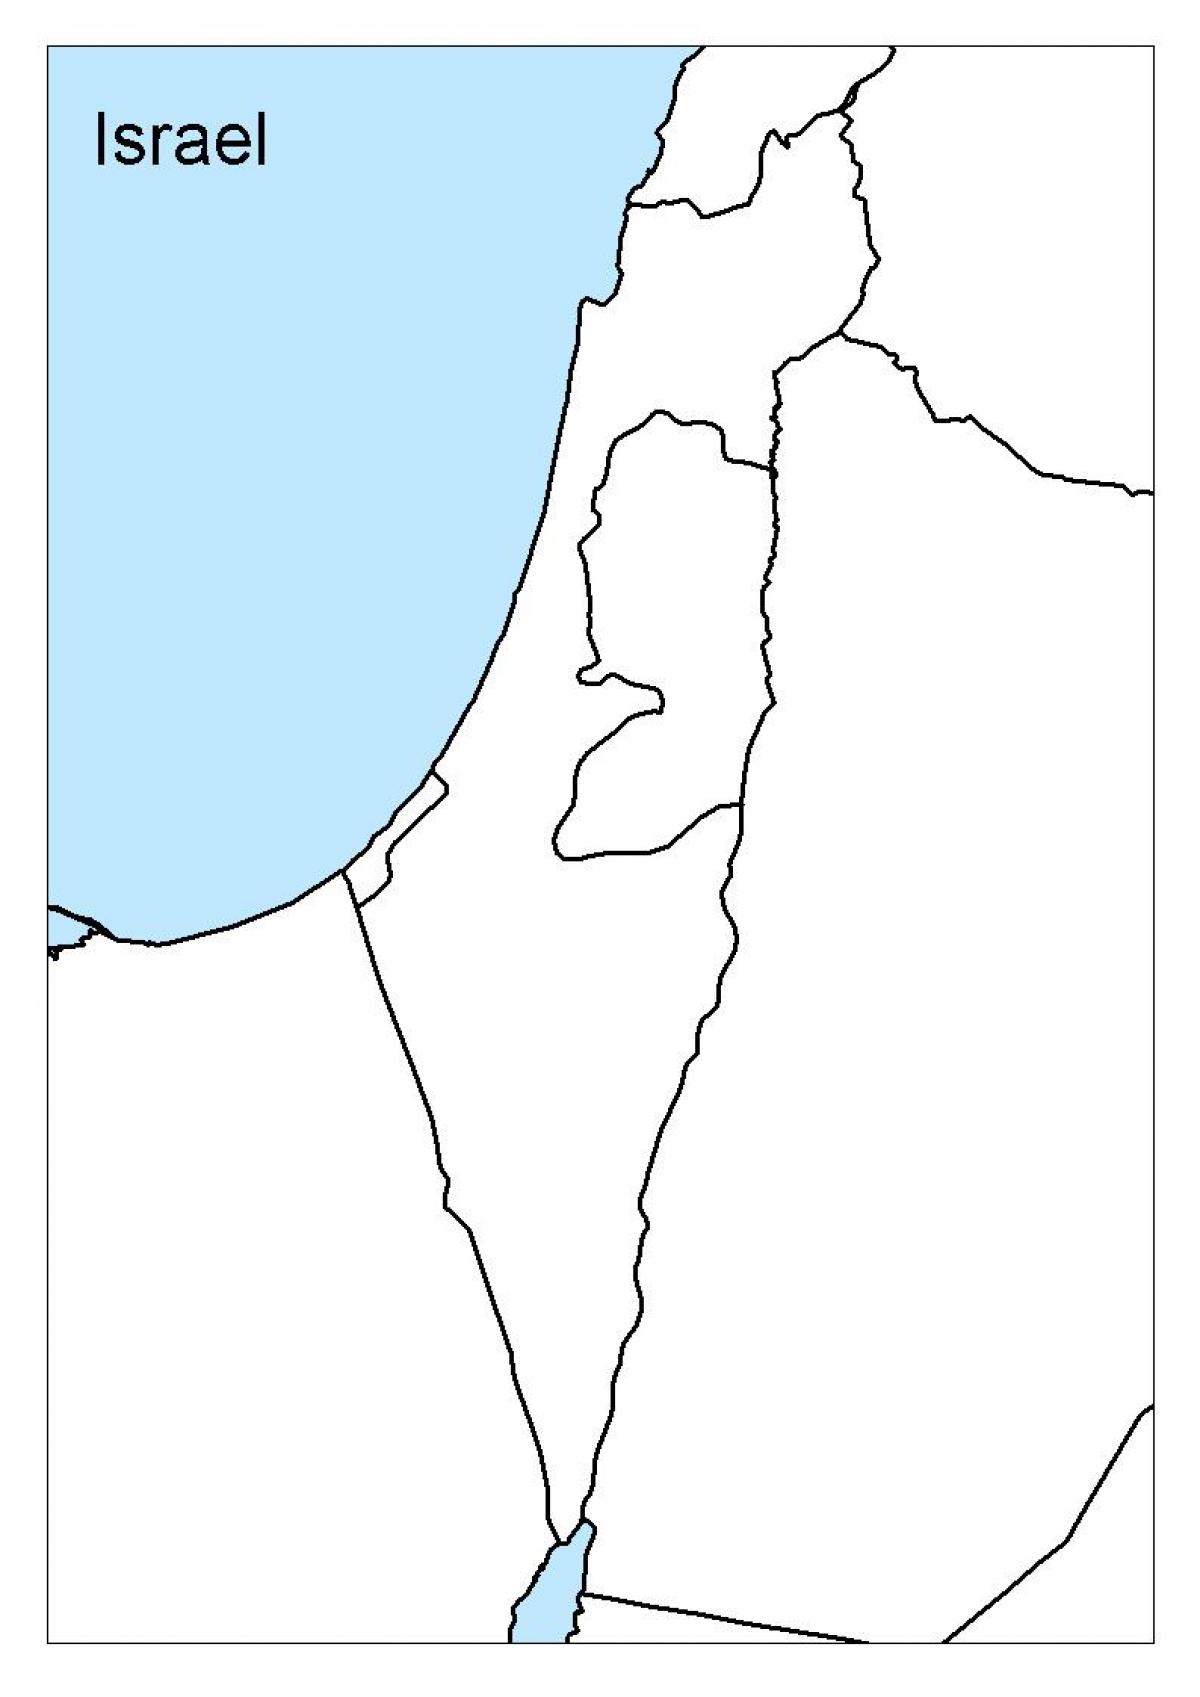 Israel contornea el mapa